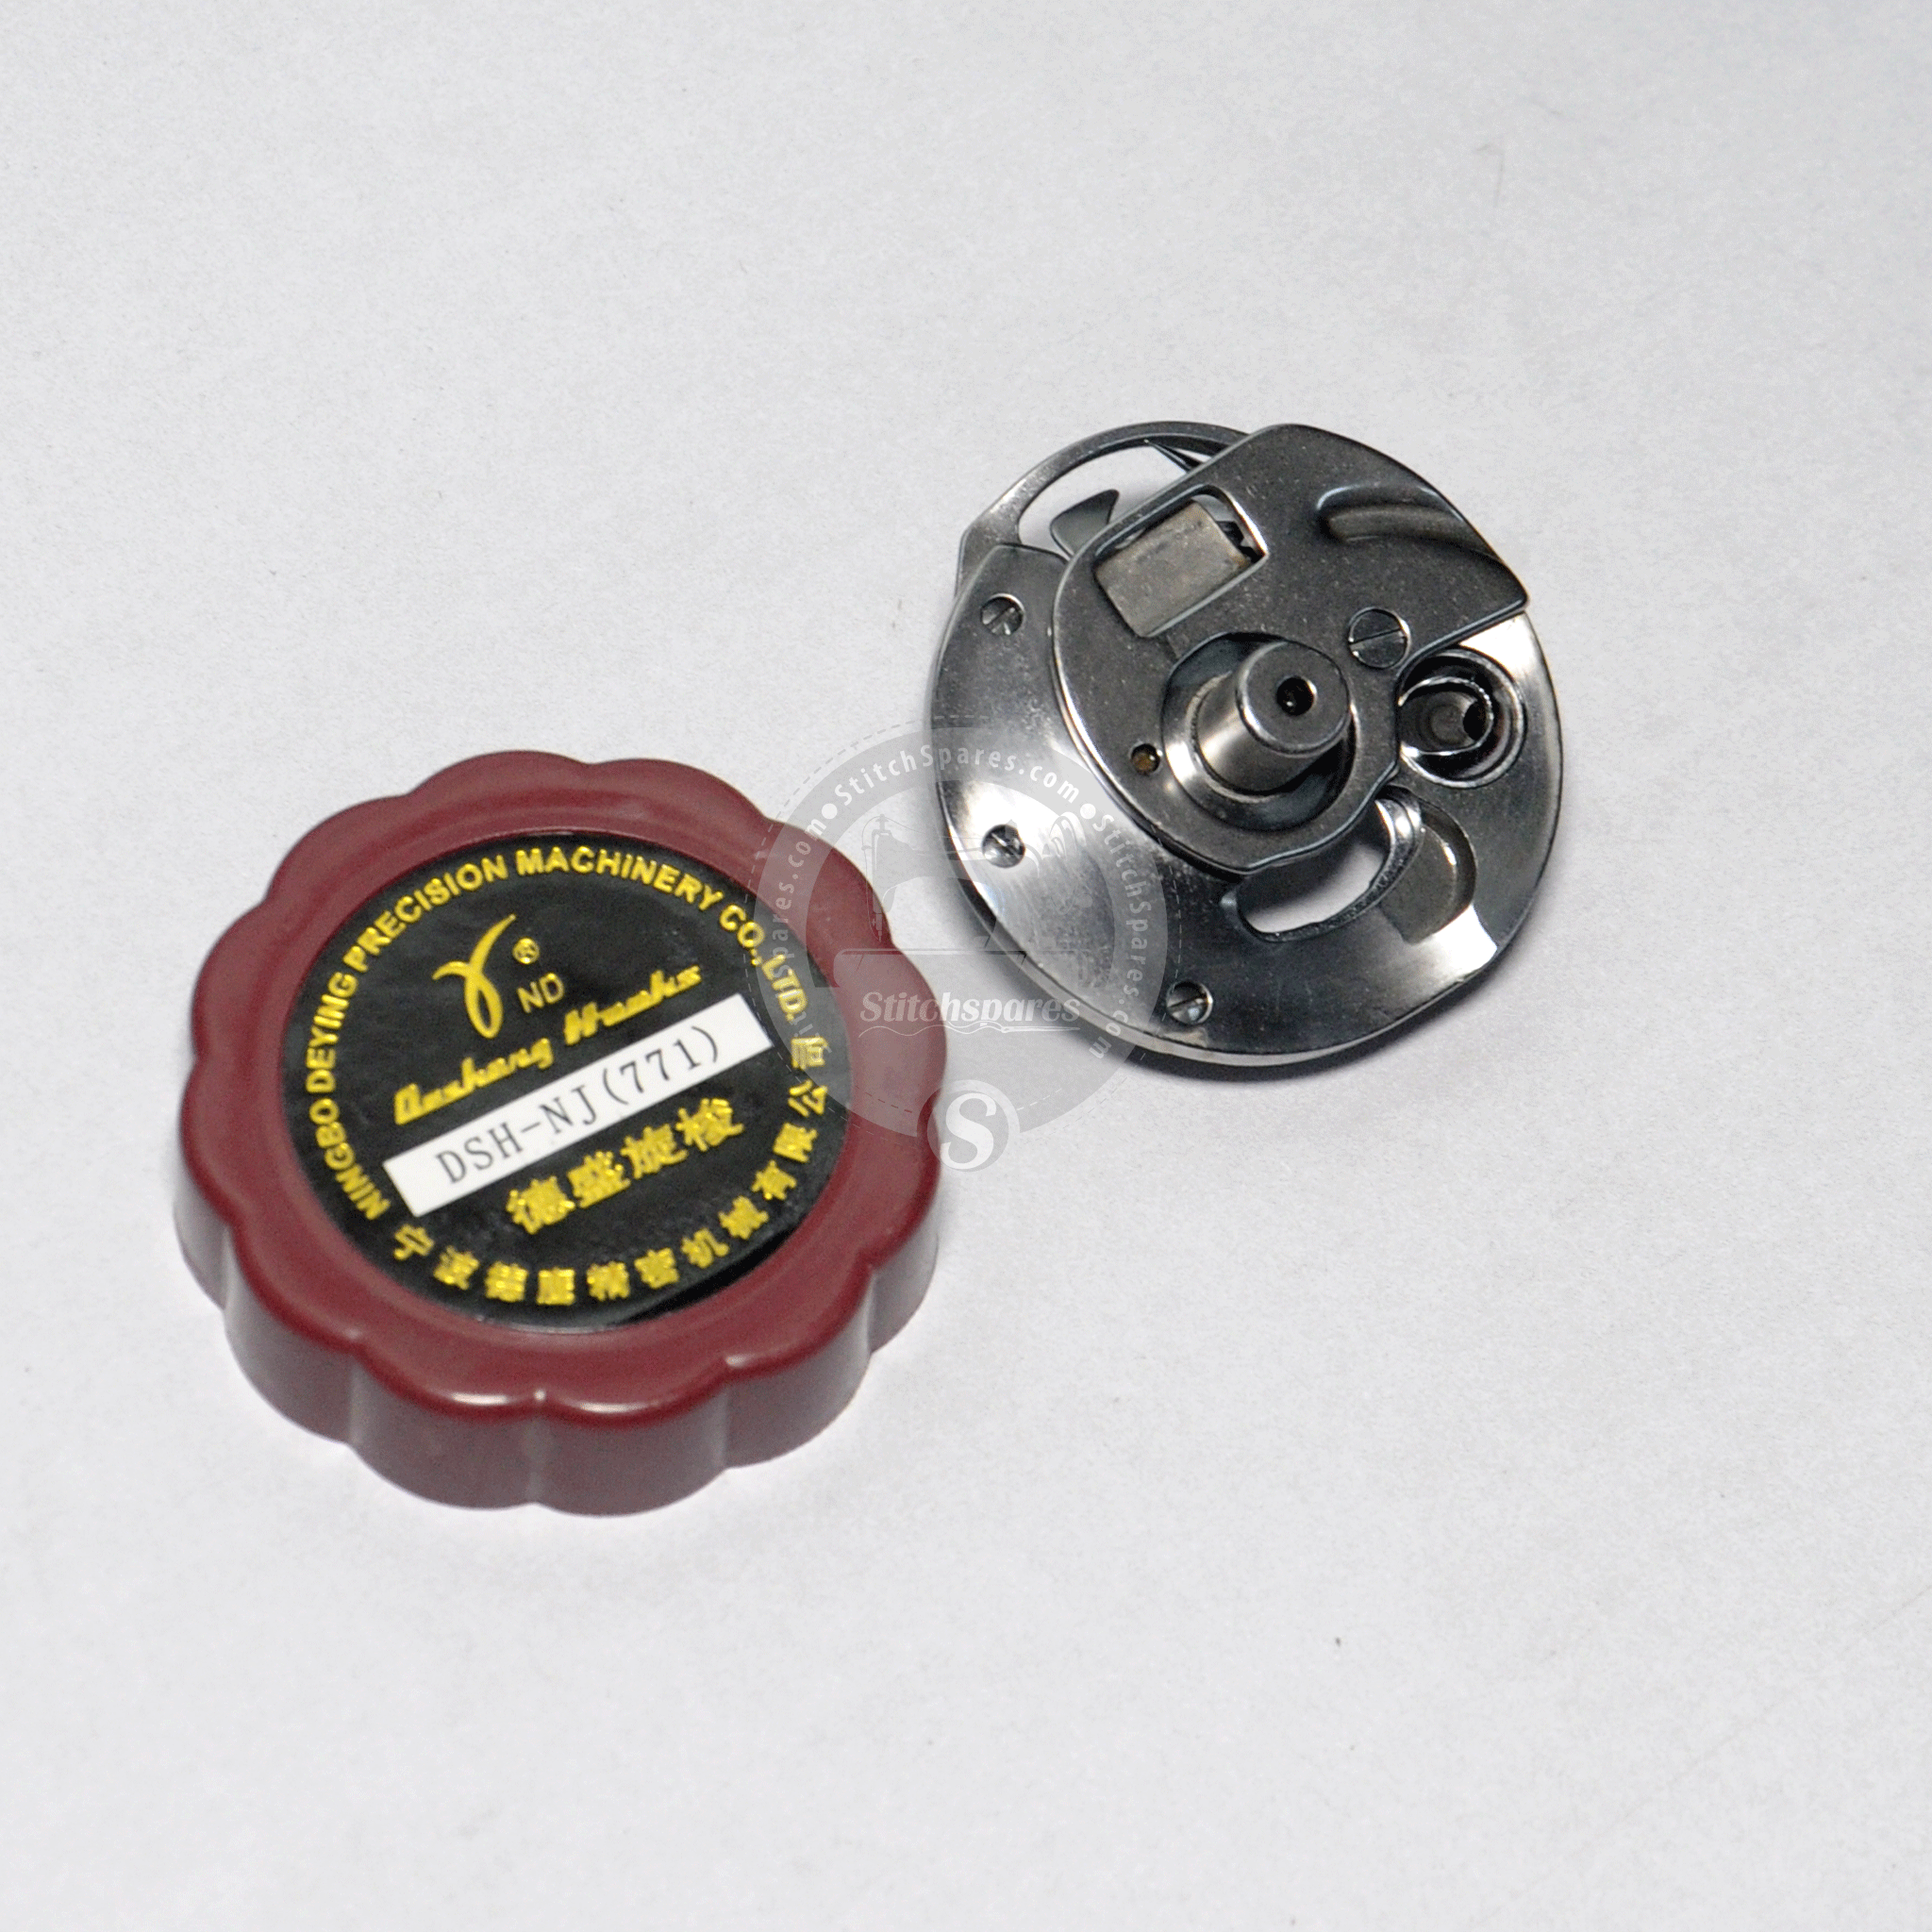 B1808-771-0A0 Juego de ganchos Juki Button Holing Machine